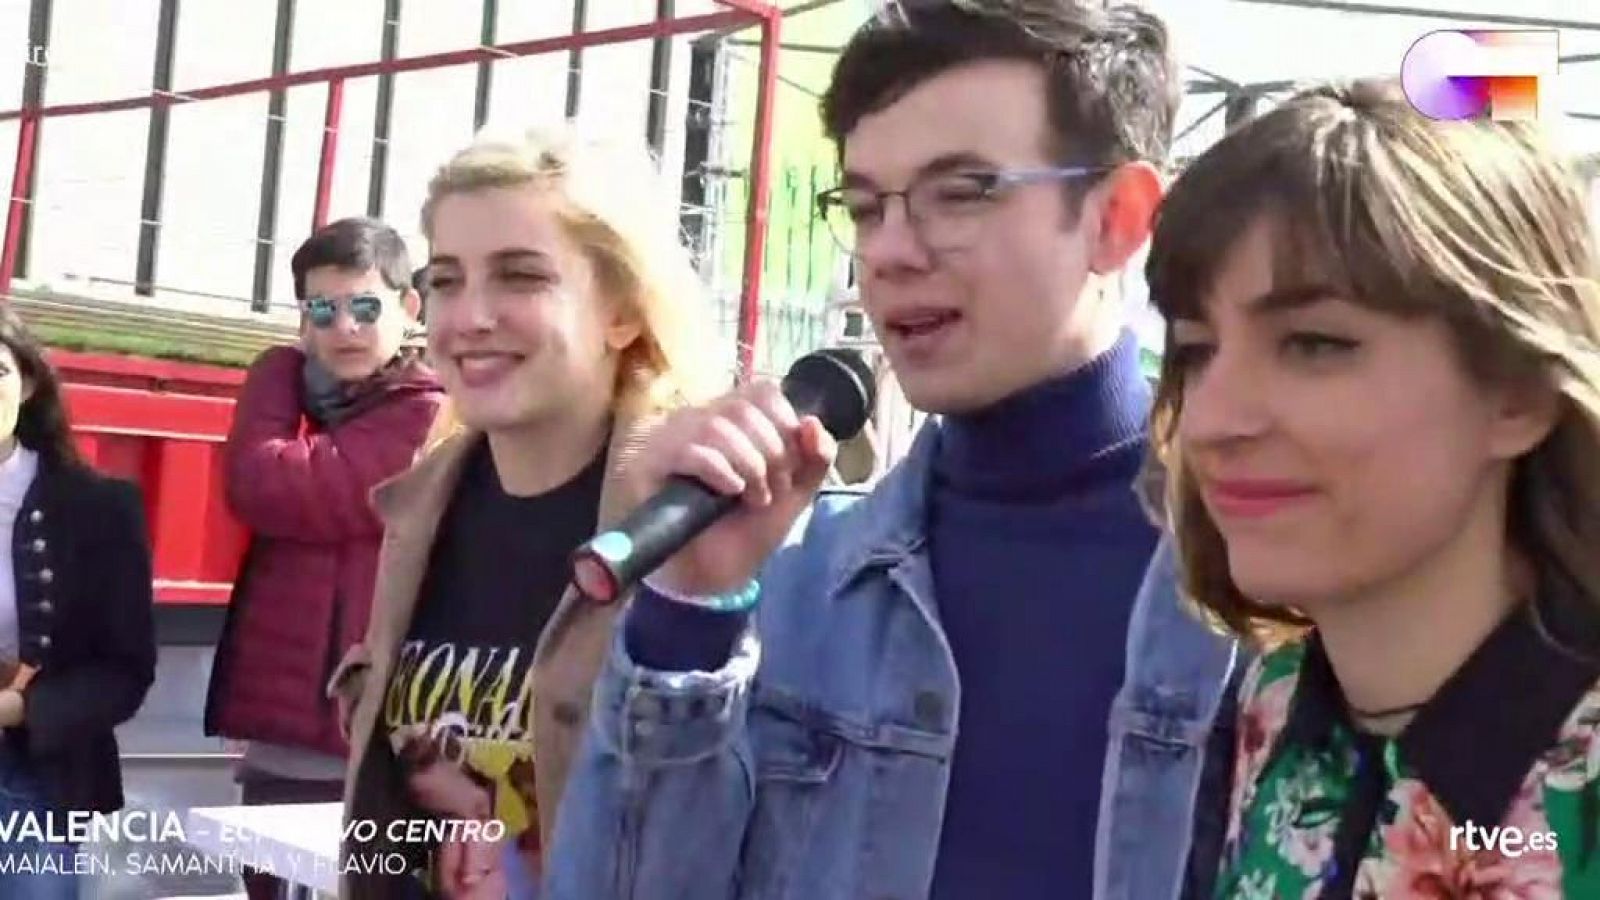 Flavio, Samantha y Maialen cantan "Díselo a la vida" a capella en las firmas de Valencia.